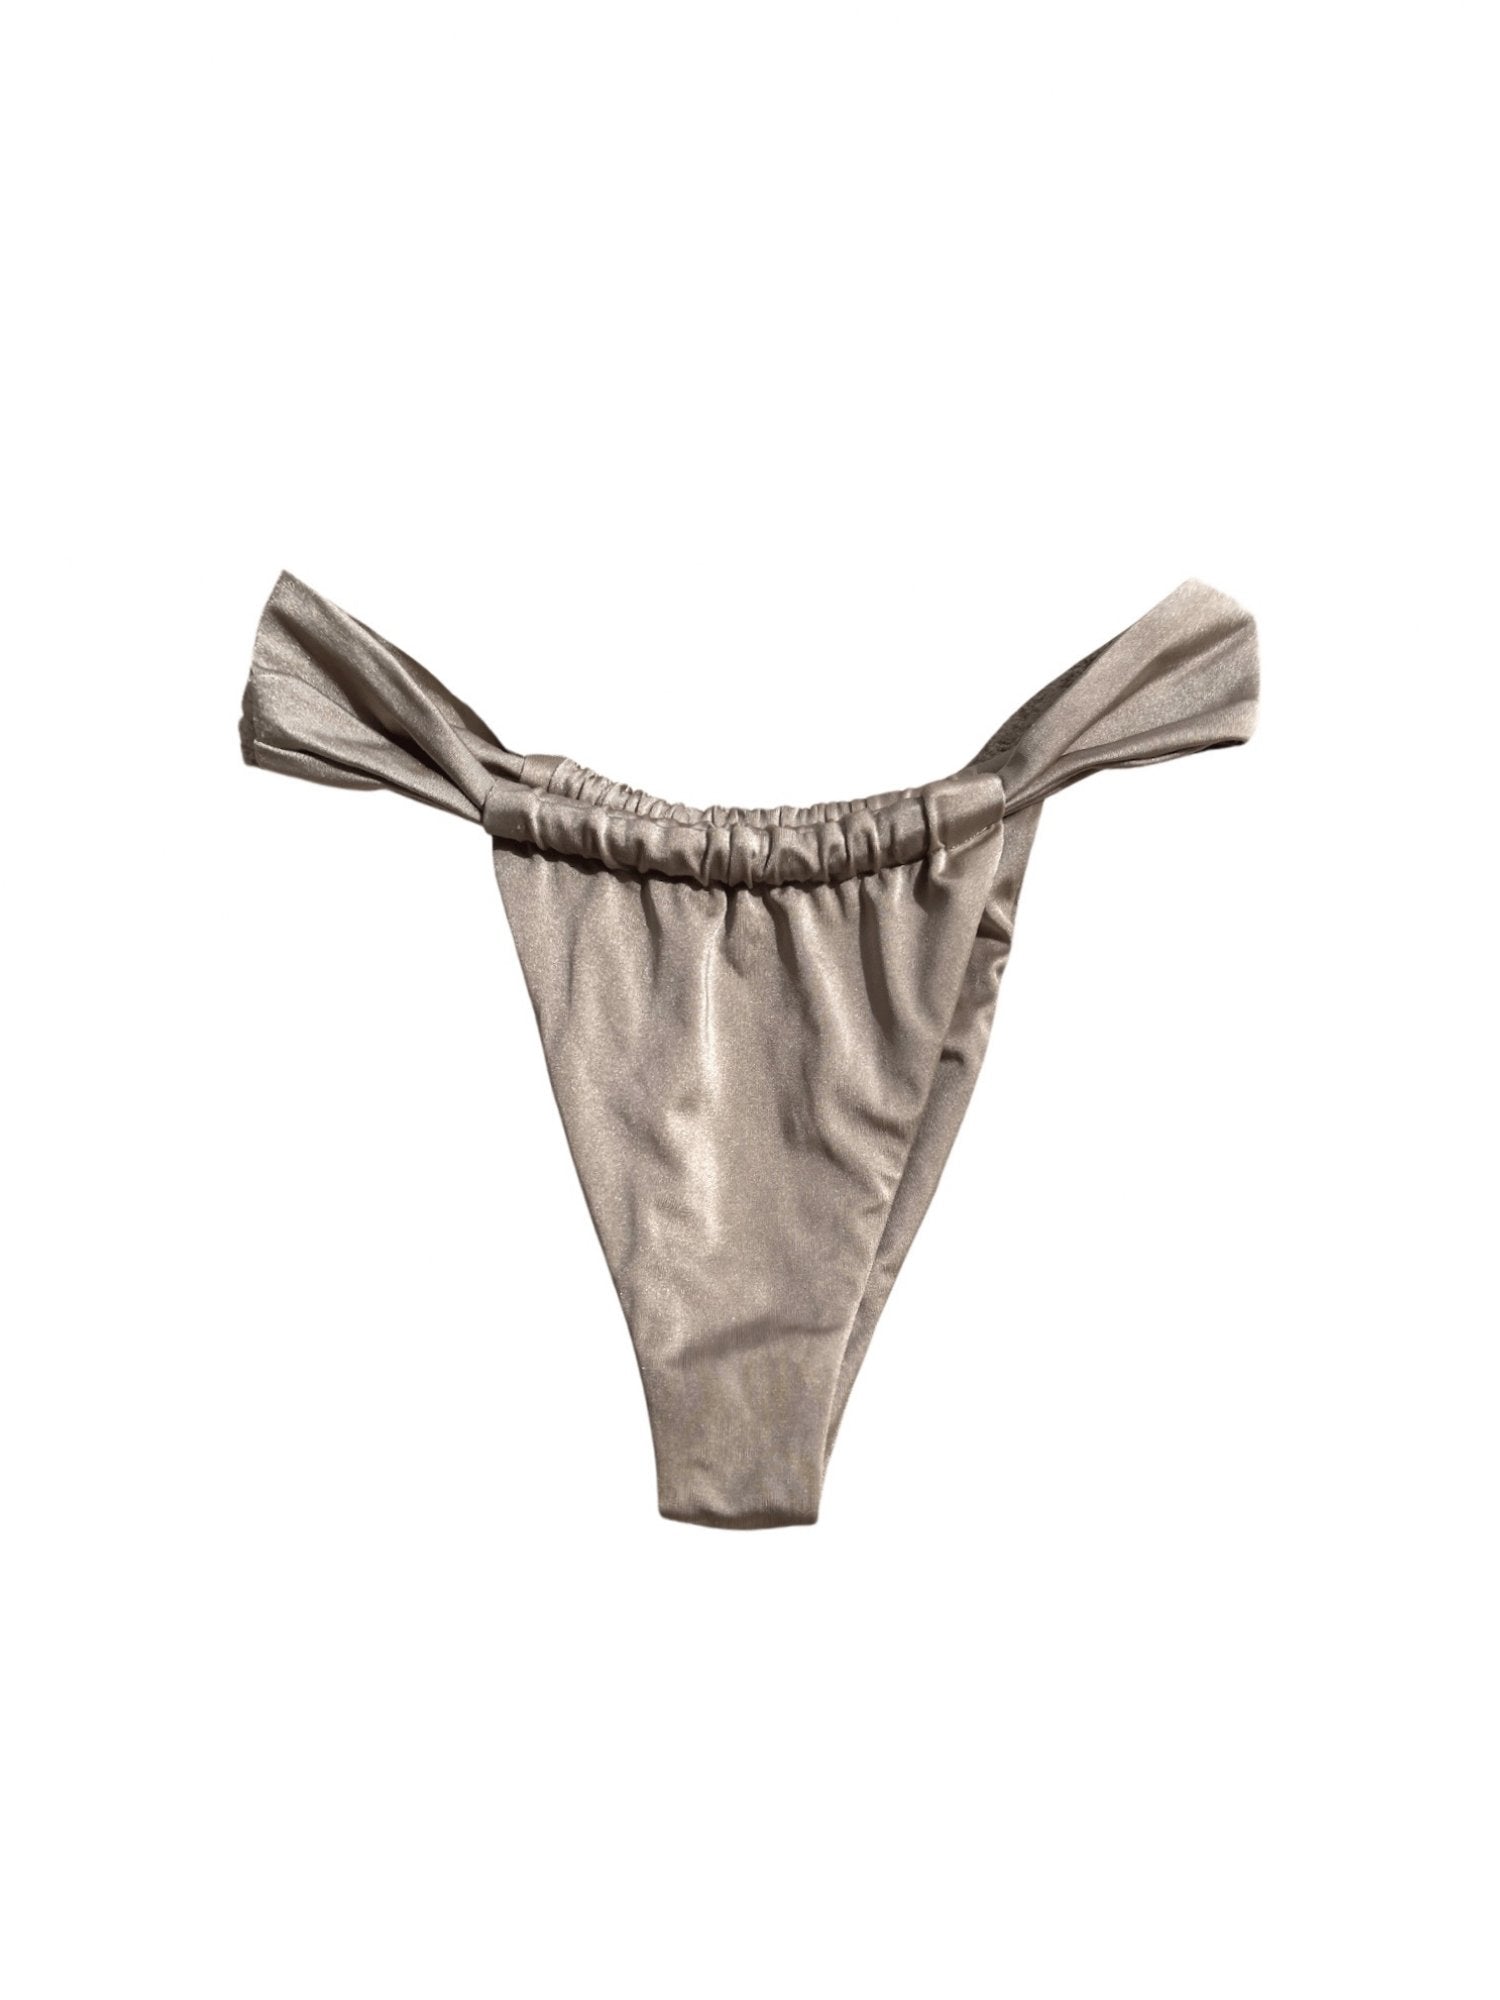 Affogato bikini bottom - Blanche Olia